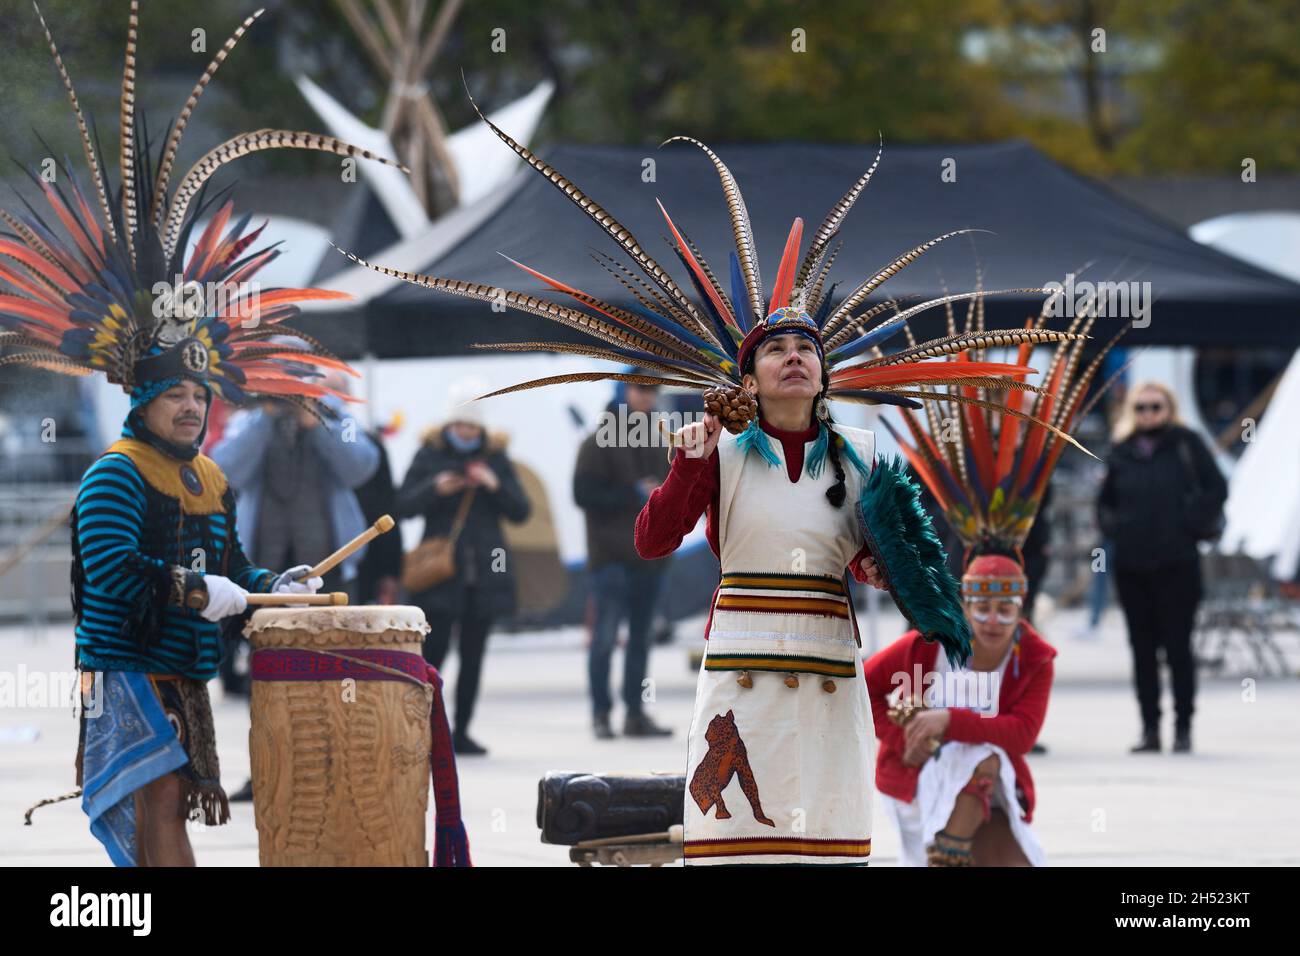 Les danseurs aztèques indigènes au rassemblement de l'héritage indigène, le 4 novembre 2021 à Toronto, Nathan Phillips Square, Canada Banque D'Images